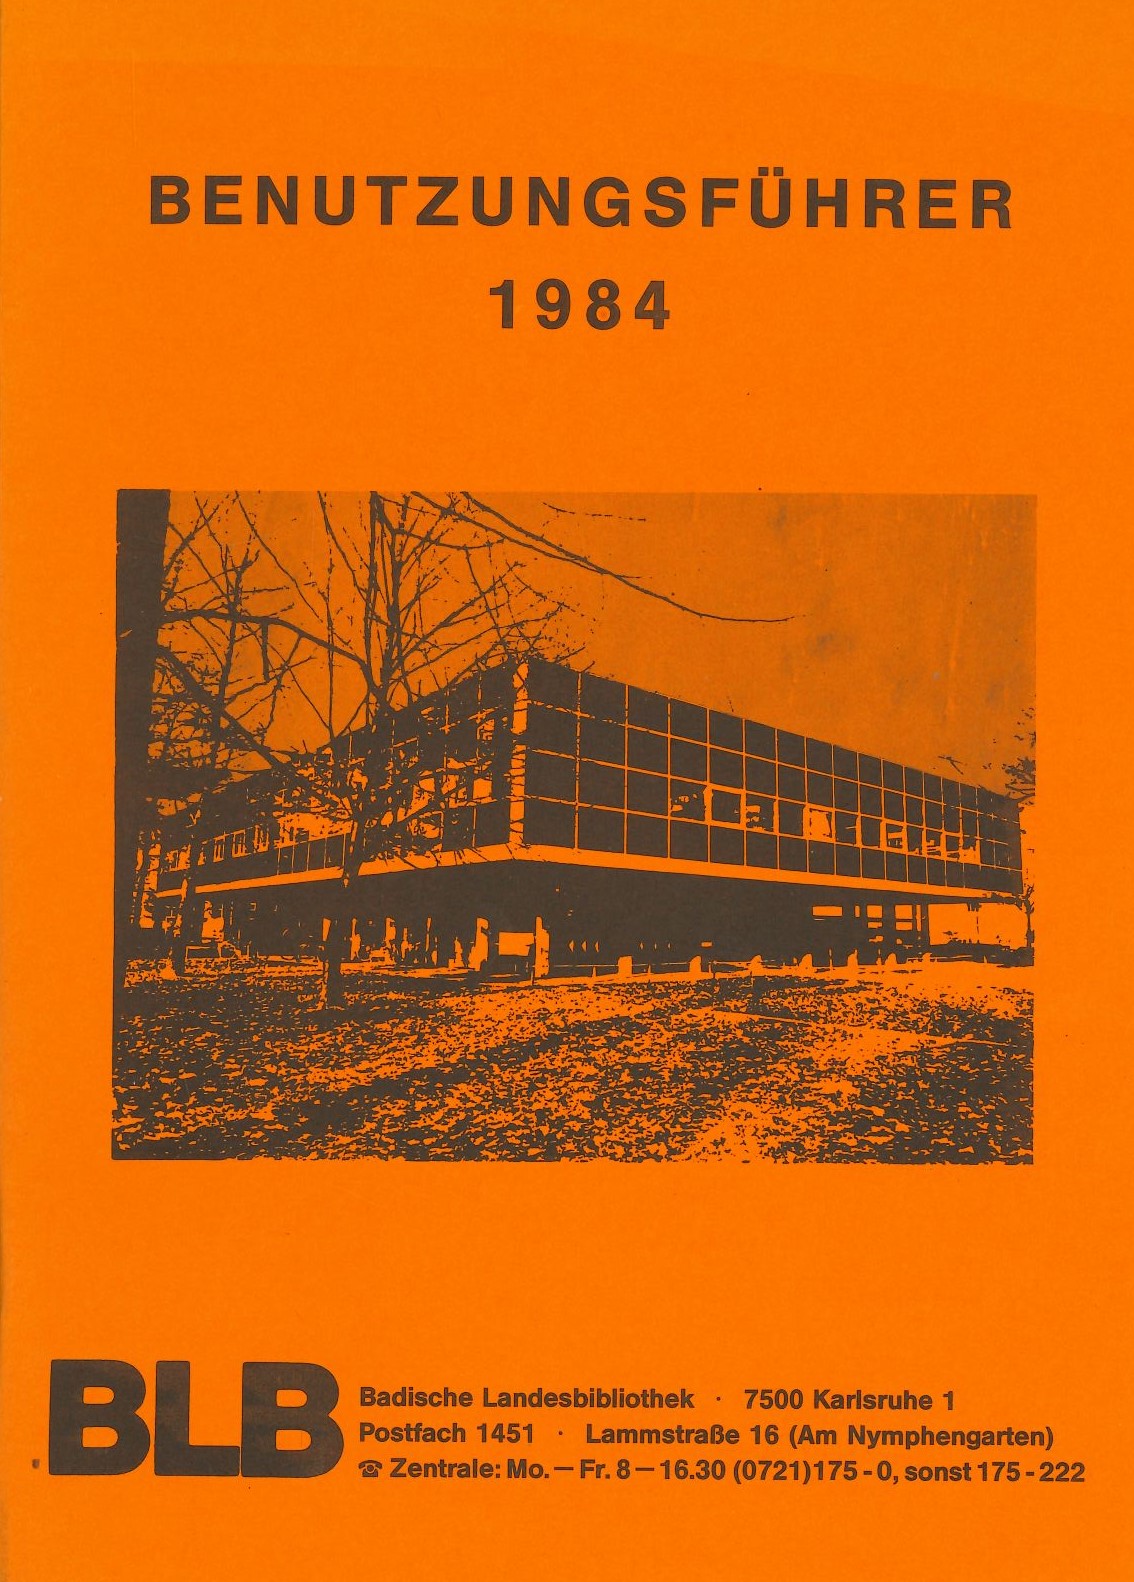 Orangener Benutzungsführer von 1984.